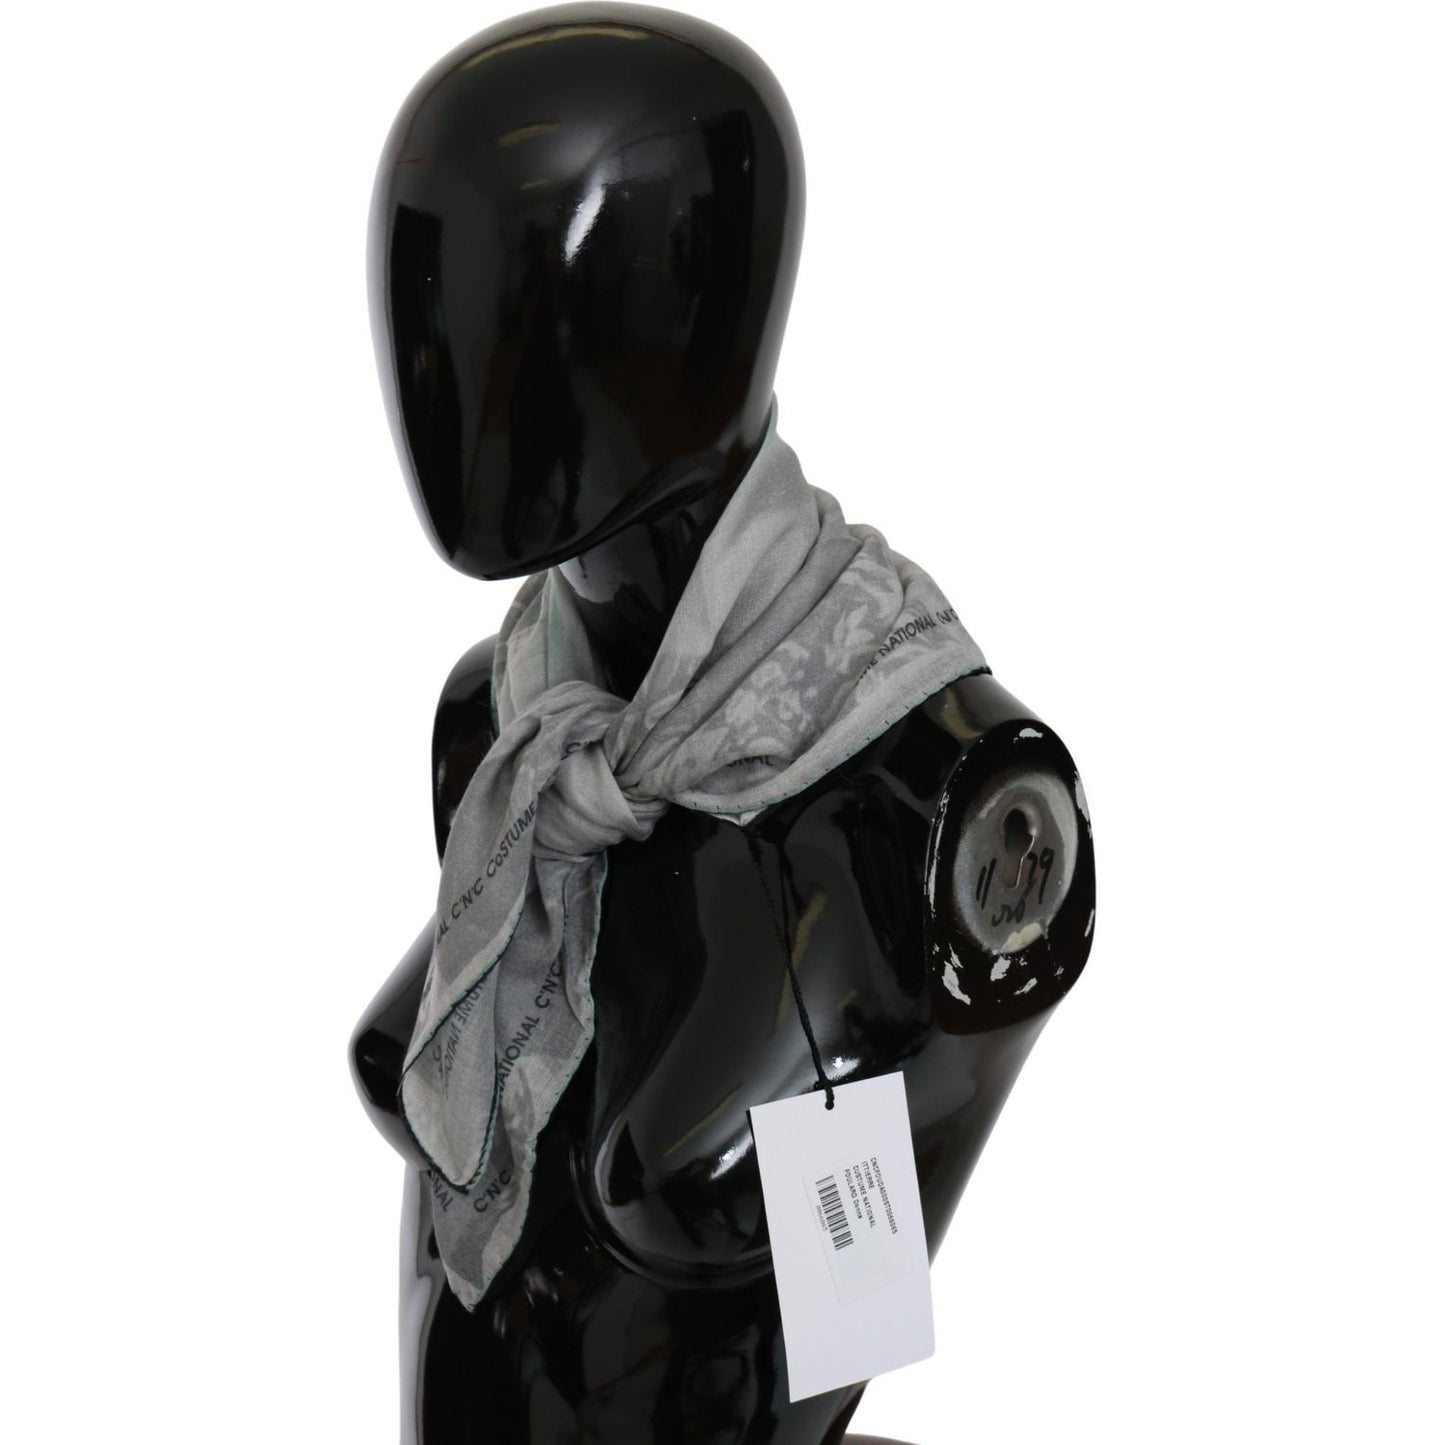 Costume National Elegant Gray Silk Scarf for Women Silk Wrap Shawls gray-silk-shawl-foulard-wrap-scarf